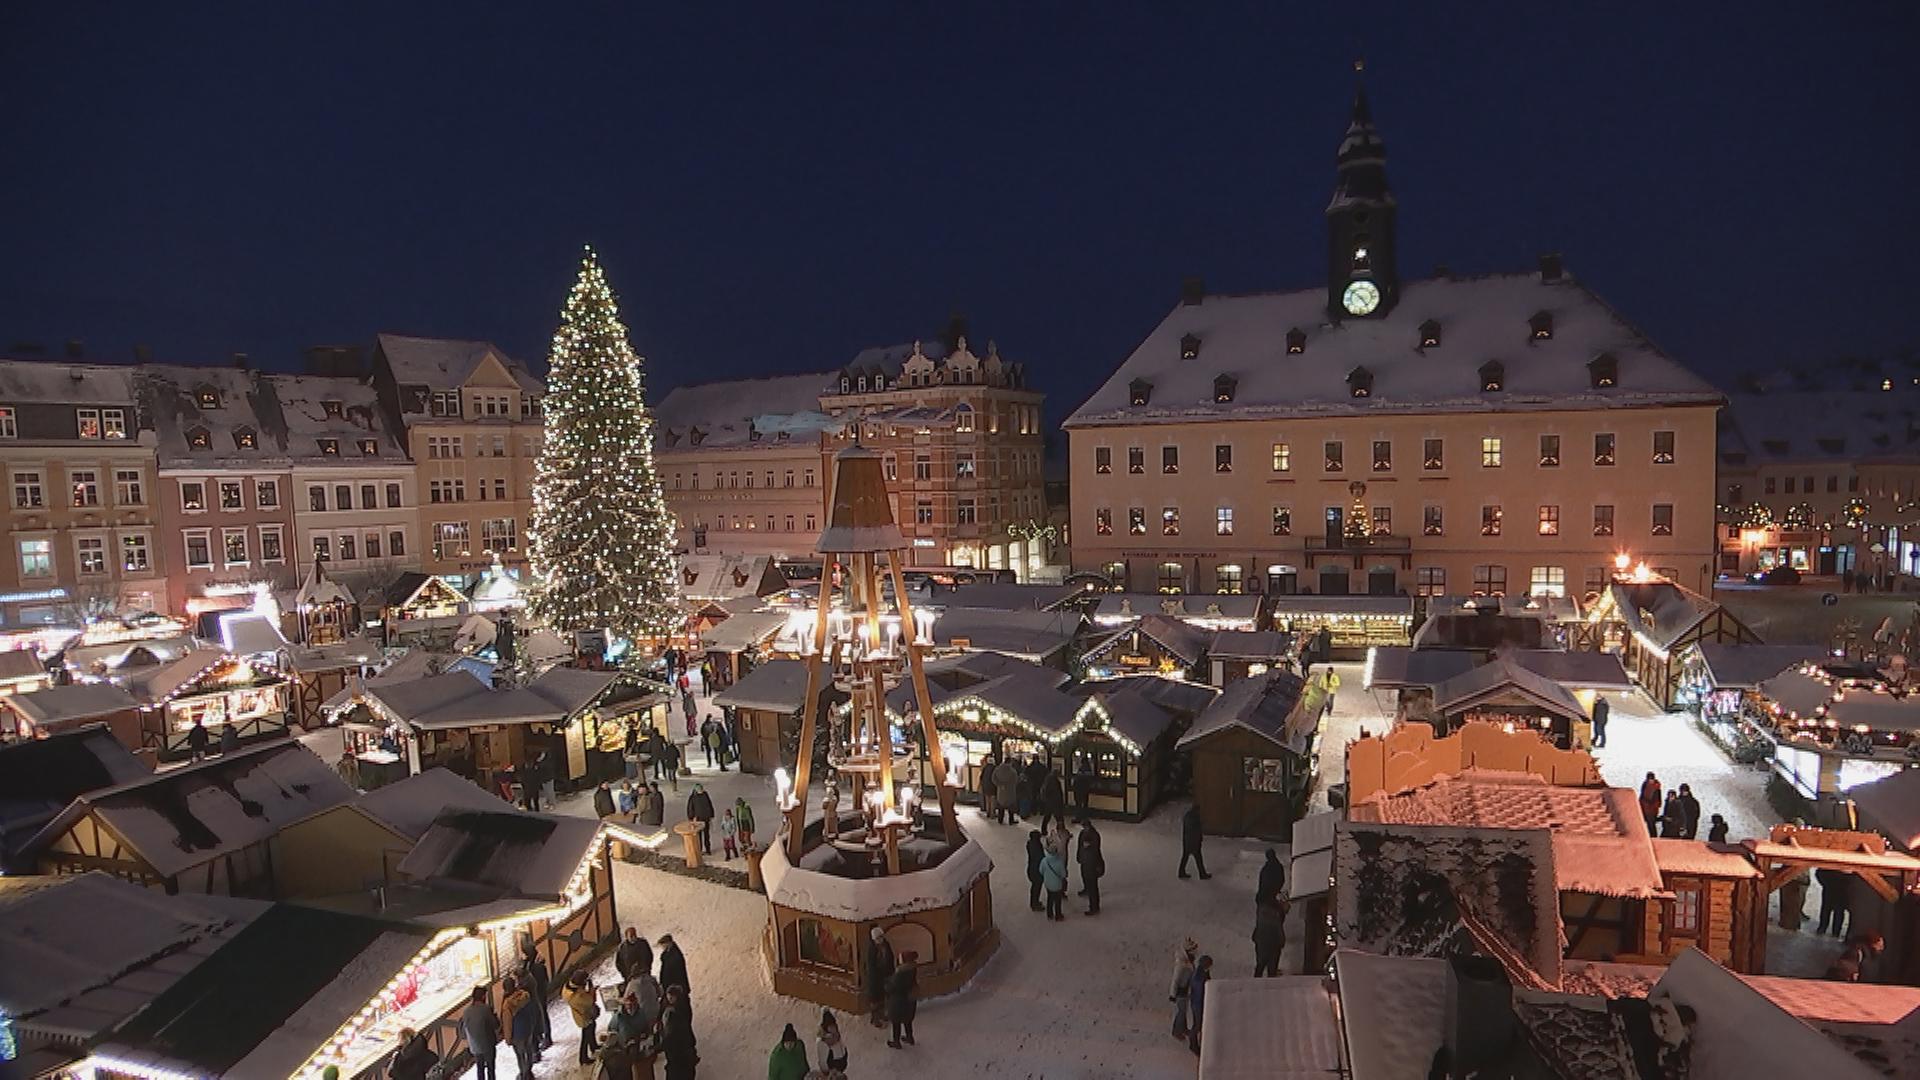 Weihnachtsmarkt in Annaberg-Buchholz bei Nacht. Schneebedeckter Platz mit Buden, großem Weihnachtsbaum und Weihnachtsmühle.